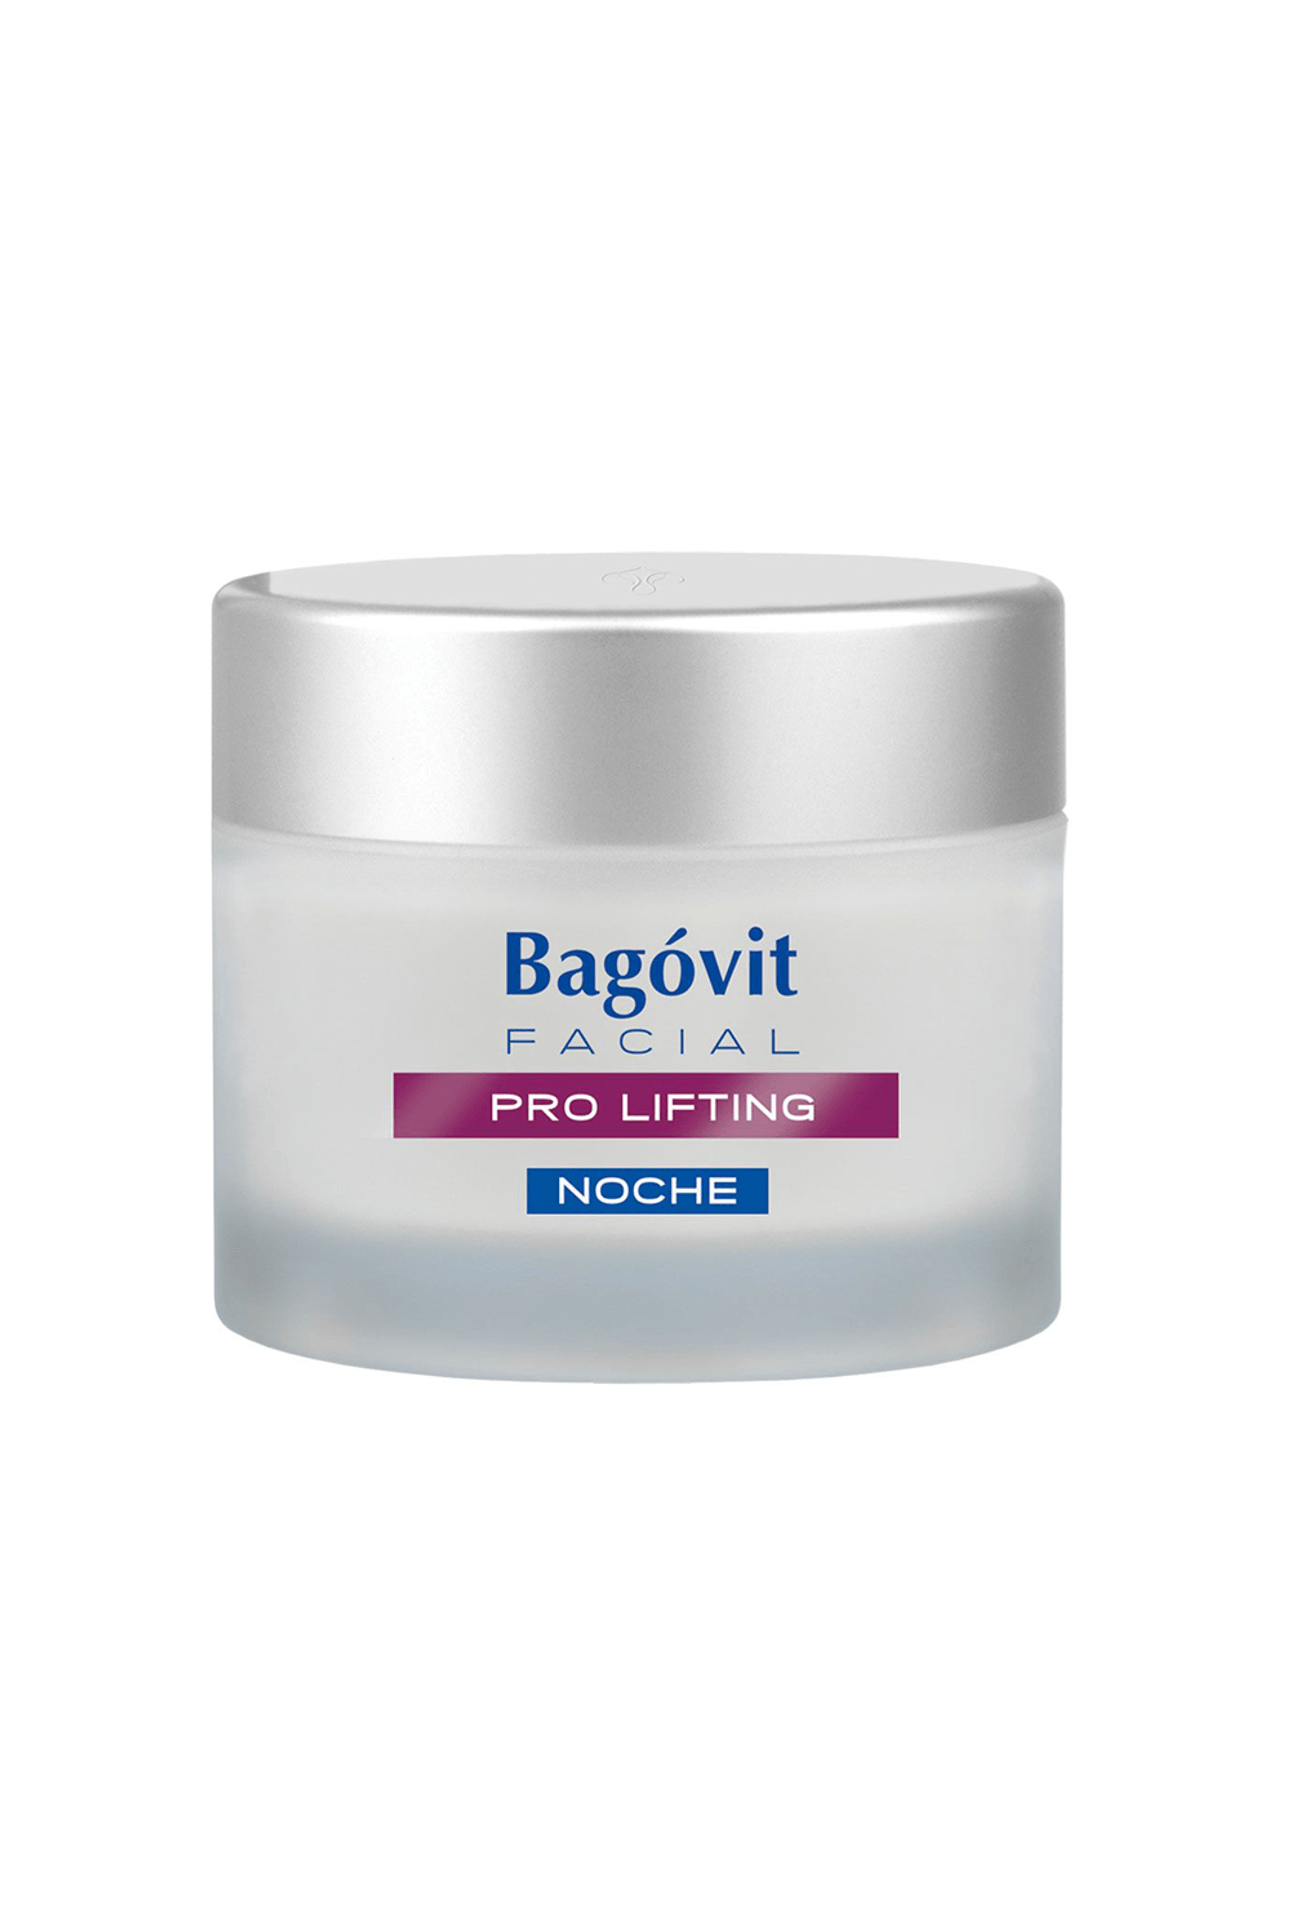 Bagovit-Pro Lifting Crema Facial de Noche Piel Seca x 55 gr-7790375268688